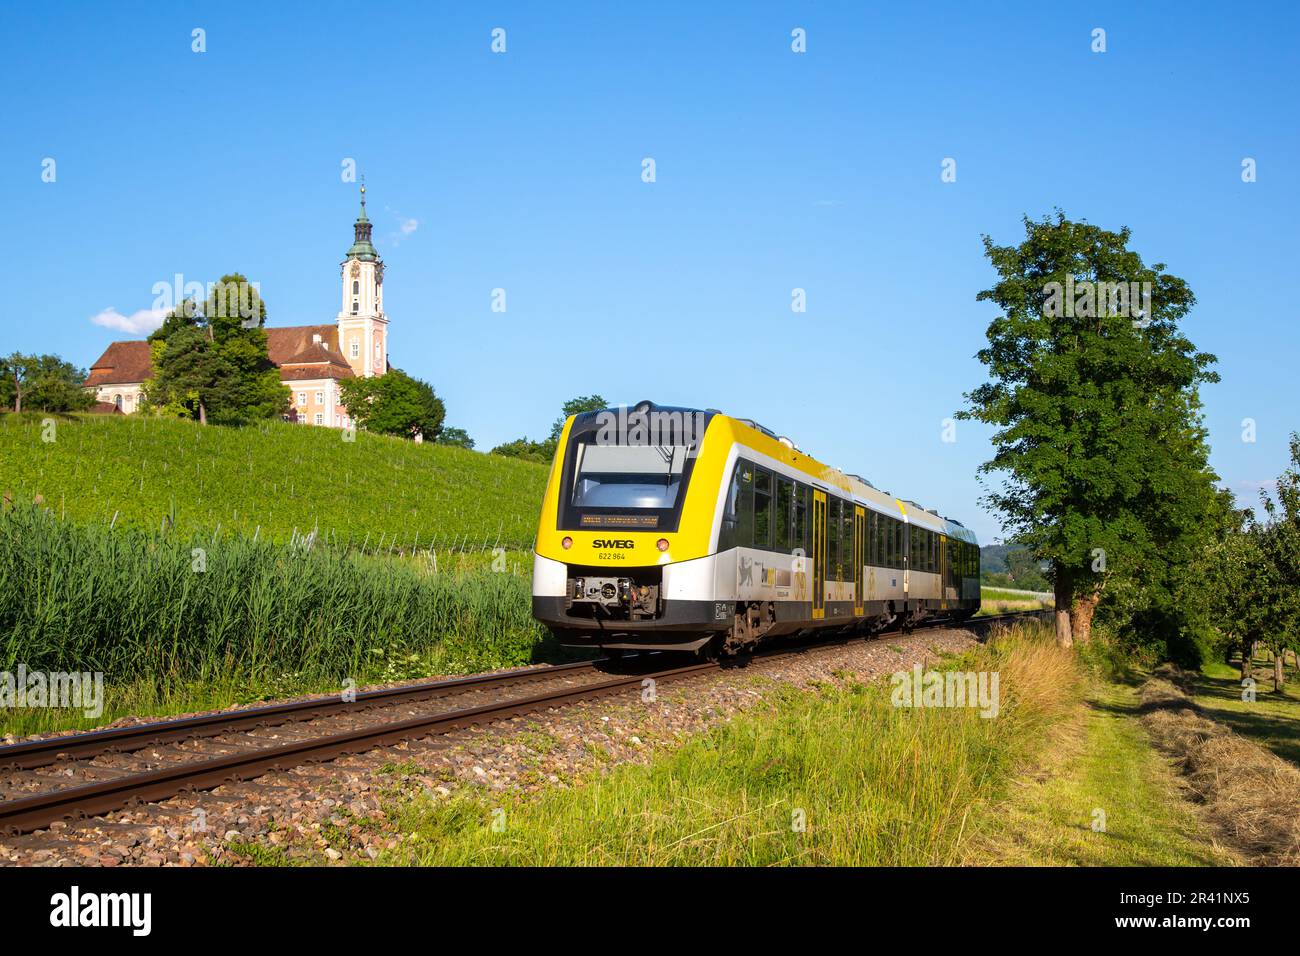 Regionalzug SWEG von Bwegt in der Nähe des Klosters Birnau, Deutschland Stockfoto